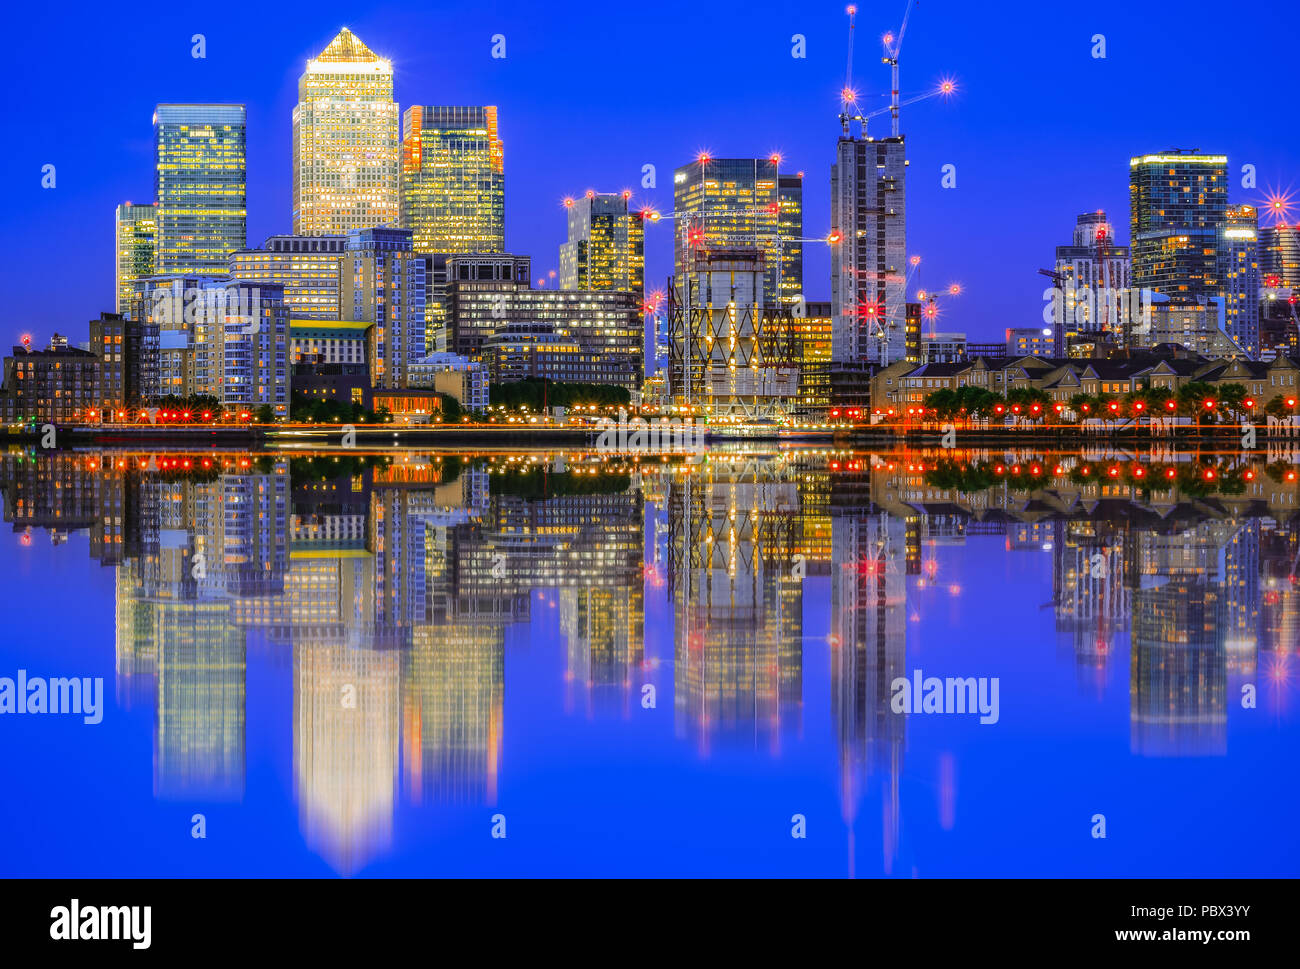 La ville illuminée à Canary Wharf et sa réflexion à partir de la Tamise, un important quartier d'affaires à East London Banque D'Images